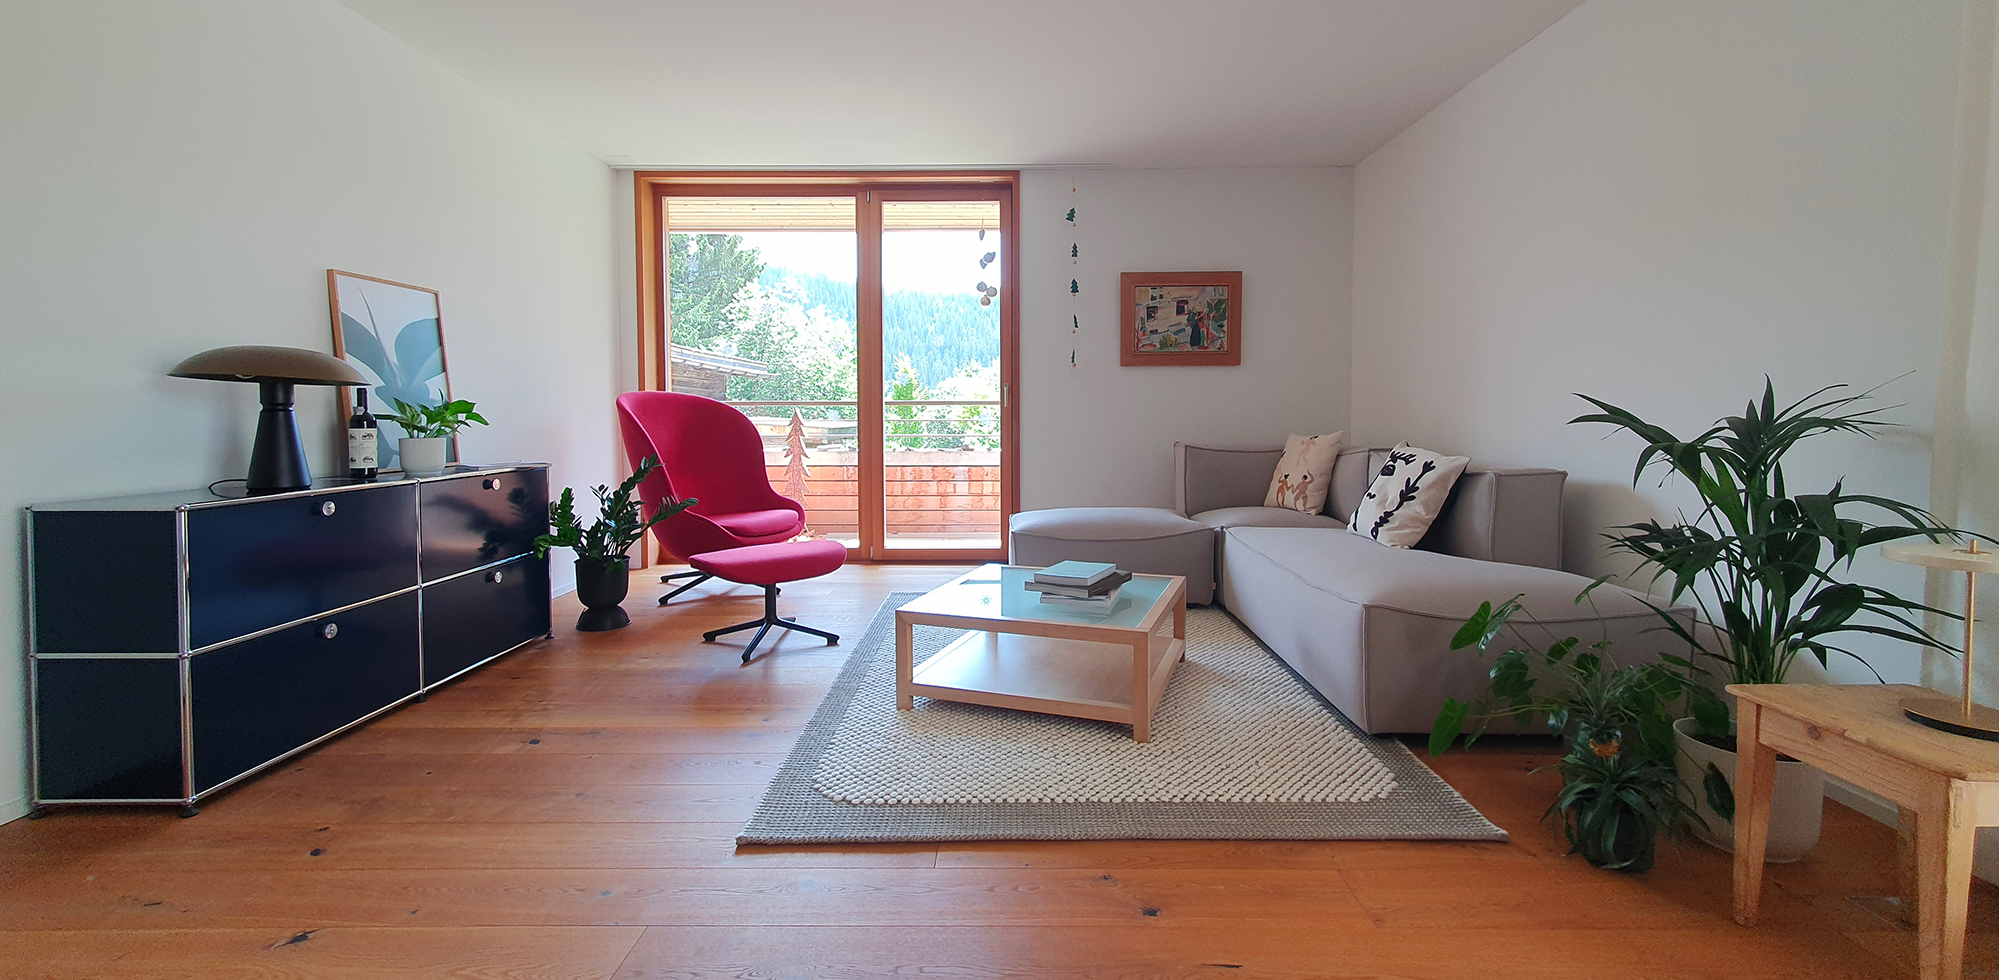 Wohnzimmer skandinavisch mit USM Möbel